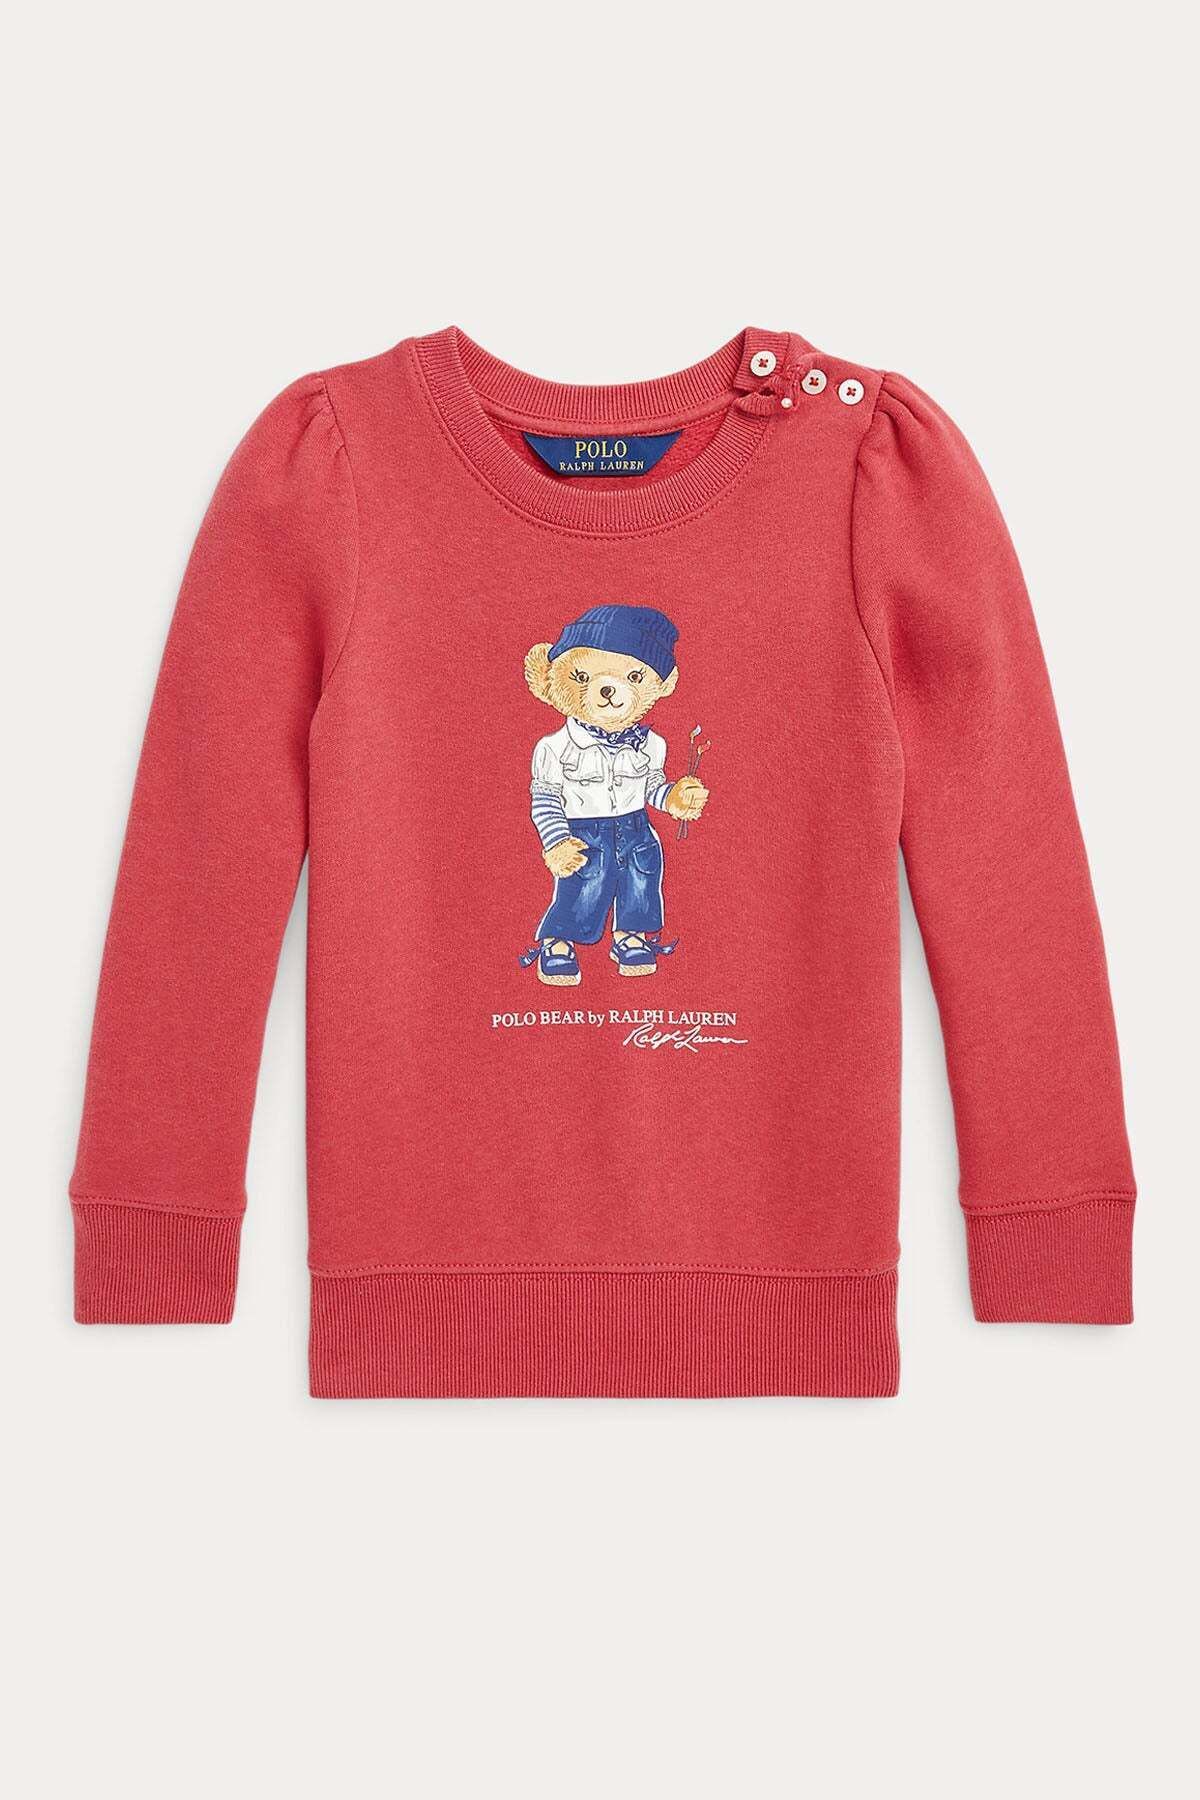 Ralph Lauren 2-4 Yaş Kız Çocuk Düğmeli Yaka Polo Bear Sweatshirt 2y / Mercan